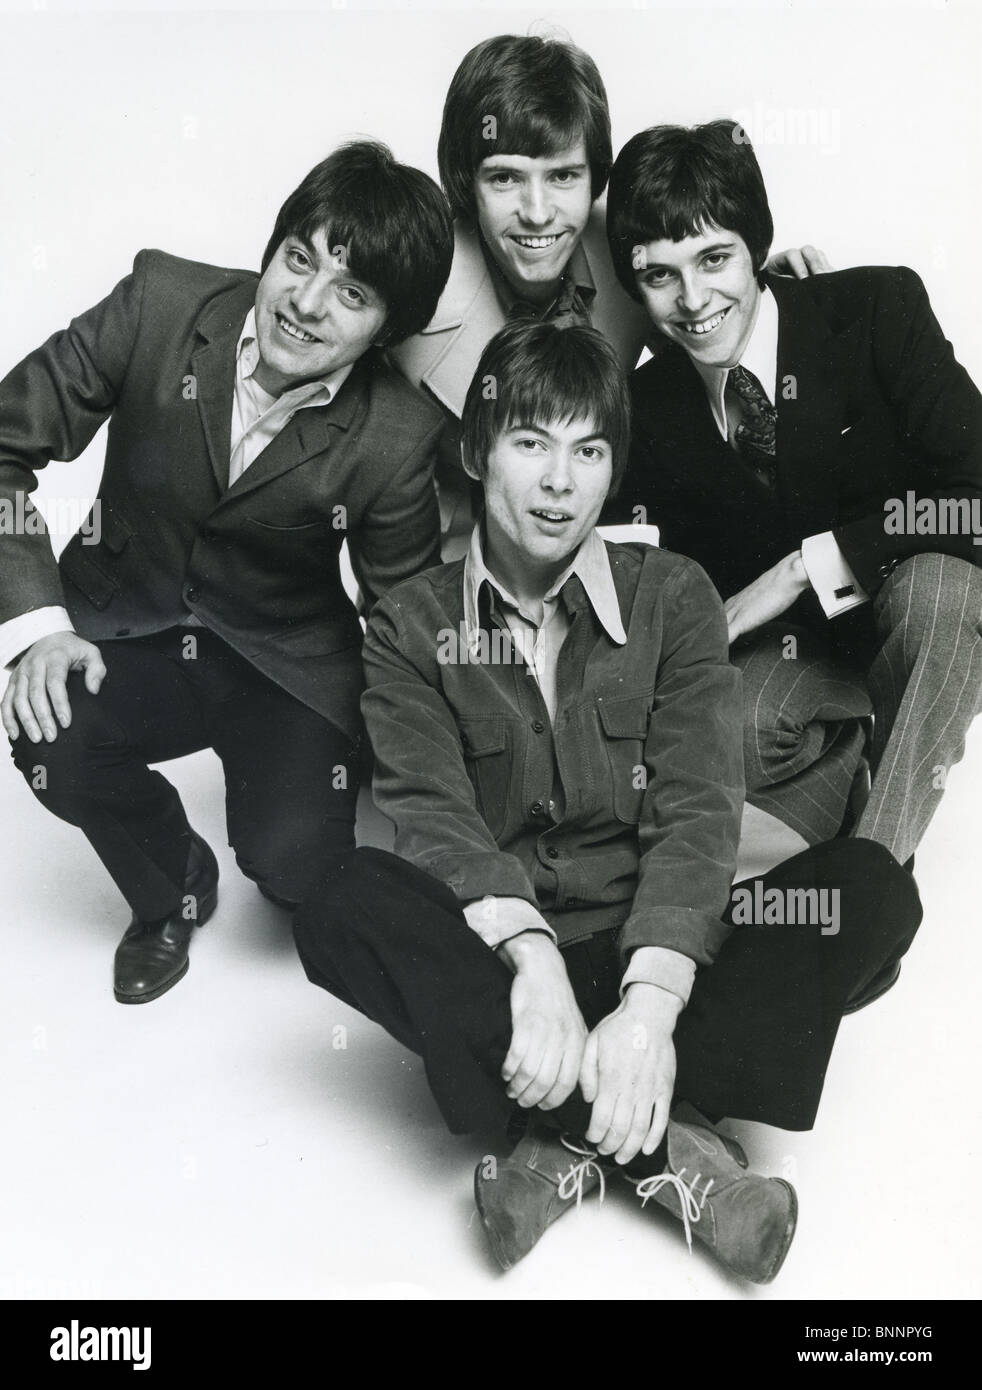 Pompelmo foto promozionale di 1960s UK gruppo pop Foto Stock